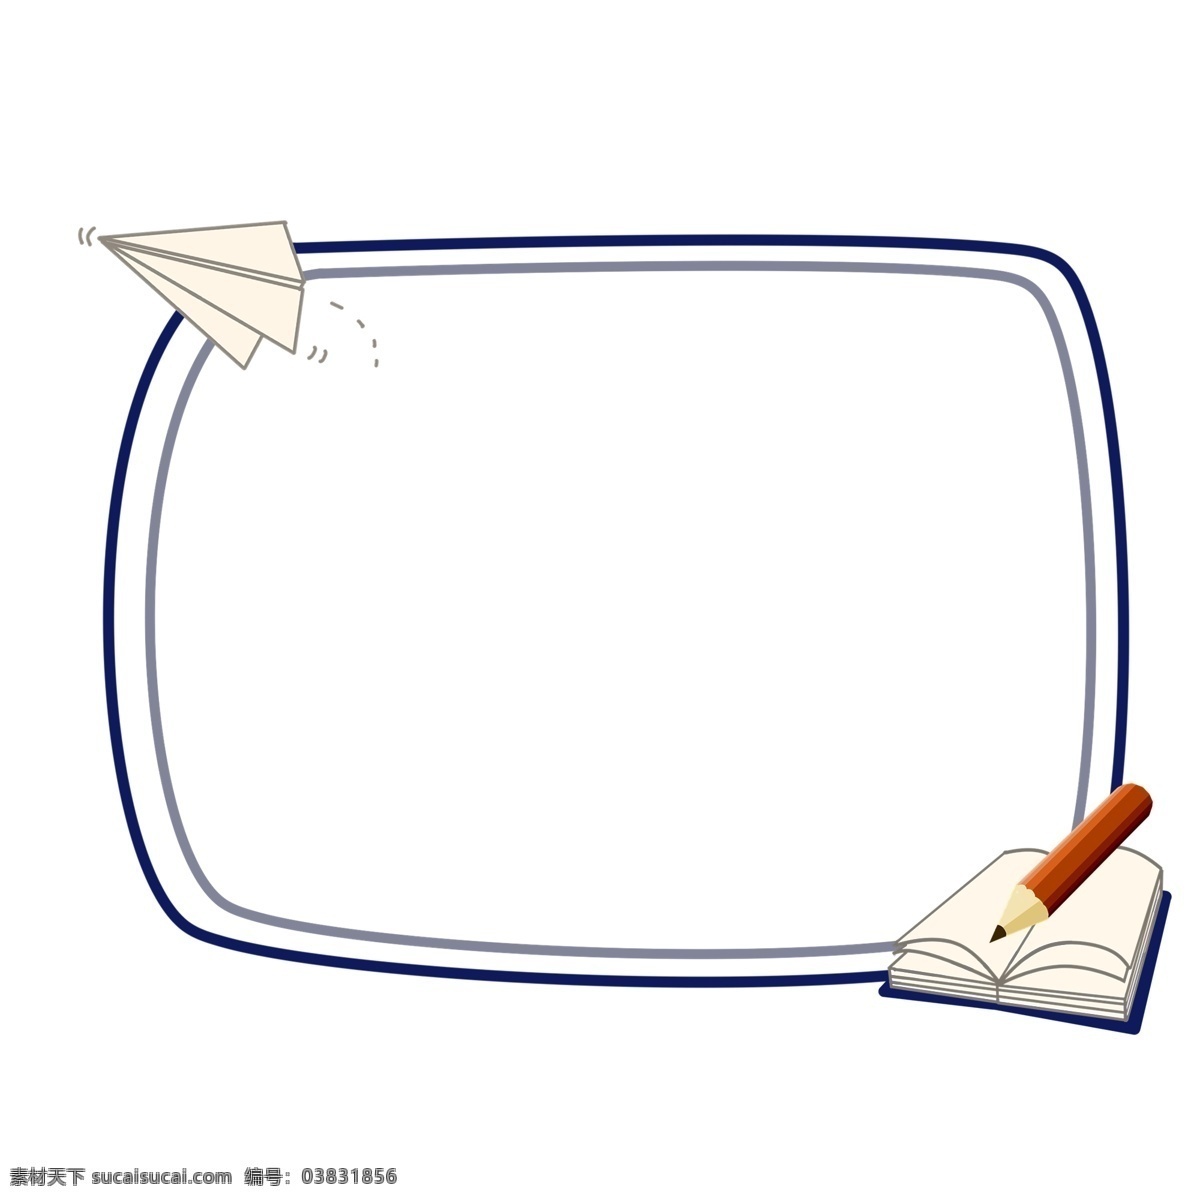 手绘 学习 纸 飞机 边框 卡通边框 手绘学习边框 热爱学习边框 白色的纸飞机 棕色的铅笔 白色的书本